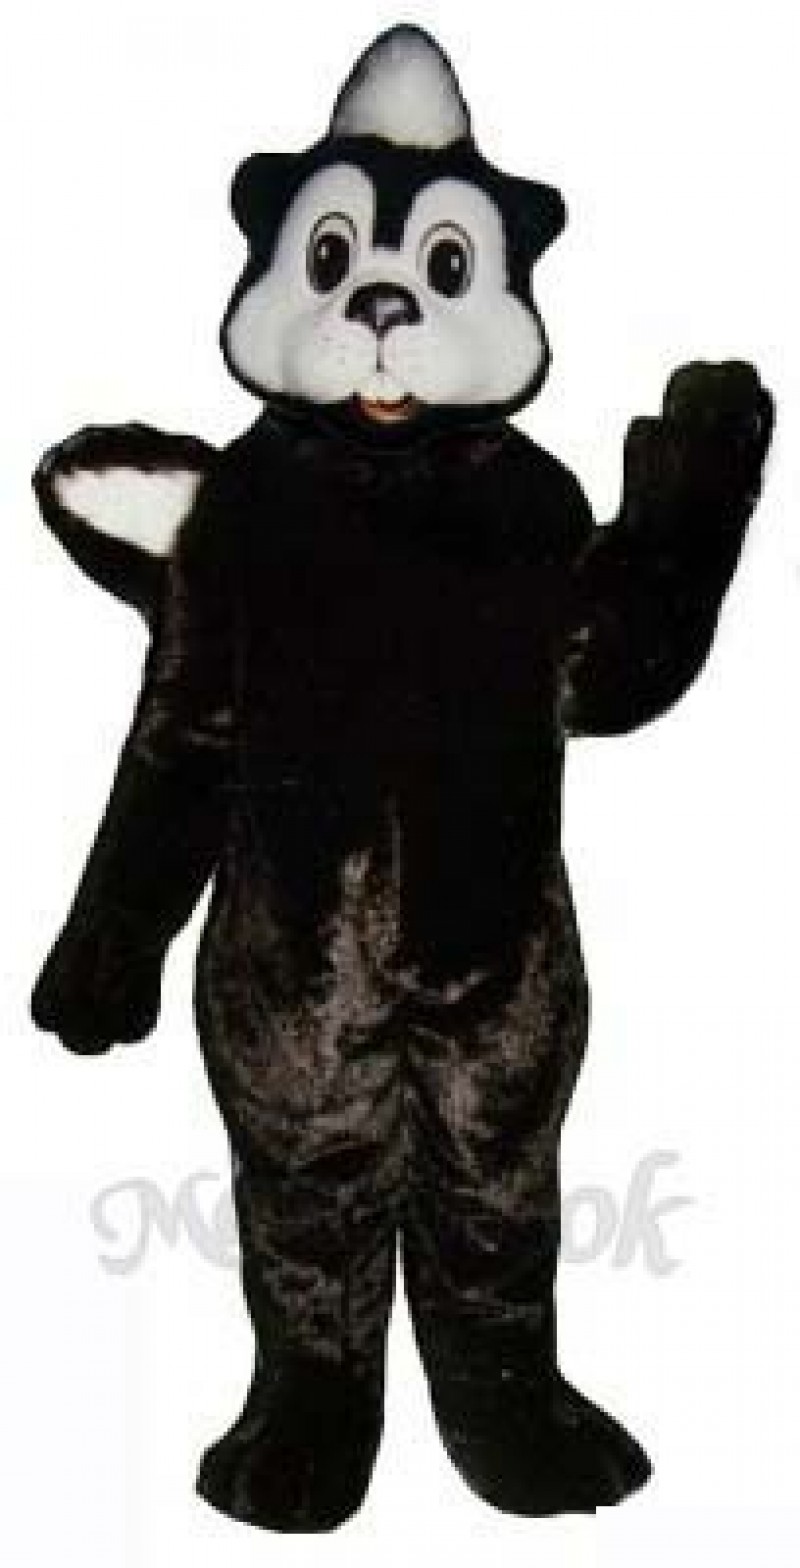 Cheri Skunk Mascot Costume